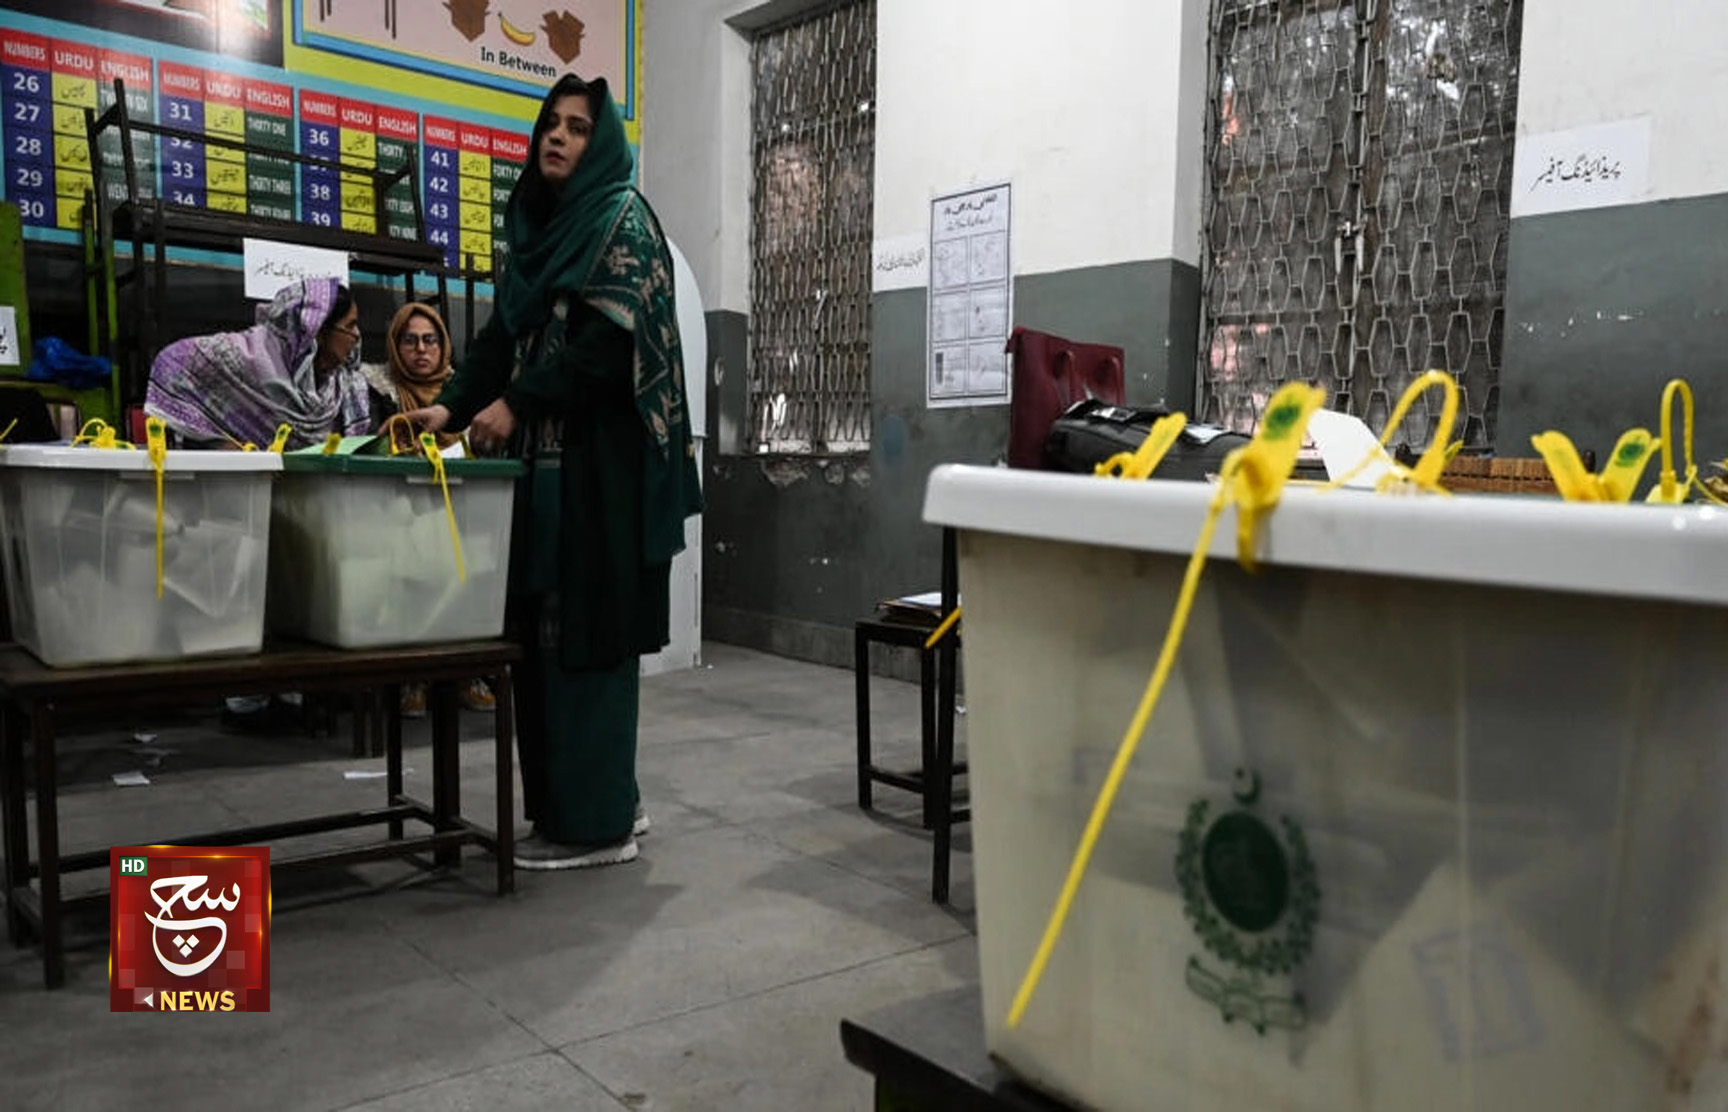 انتخابات تشريعية حاسمة في باكستان أبرز رهاناتها تعزيز الاستقرار السياسي وتجاوز الأزمة الاقتصادية